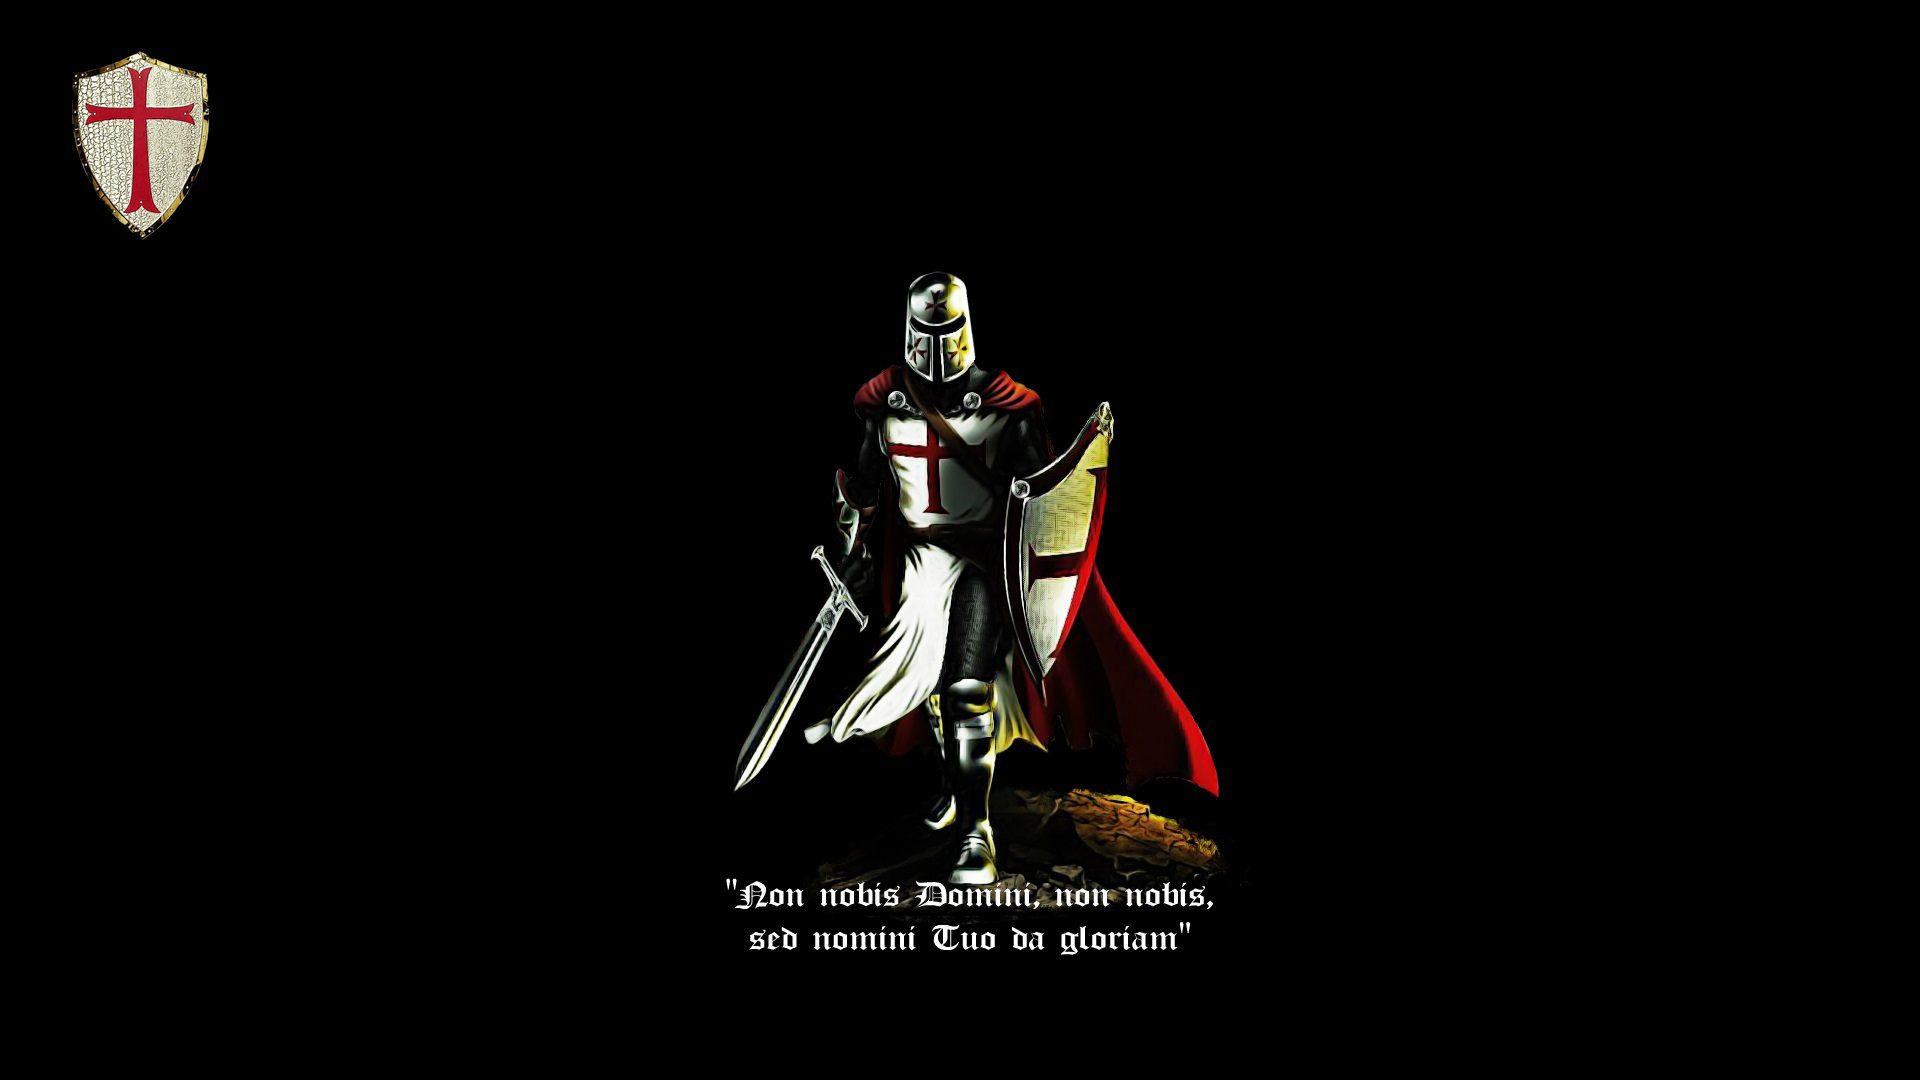 Knight cross knight templar latin crusader cattolic black red